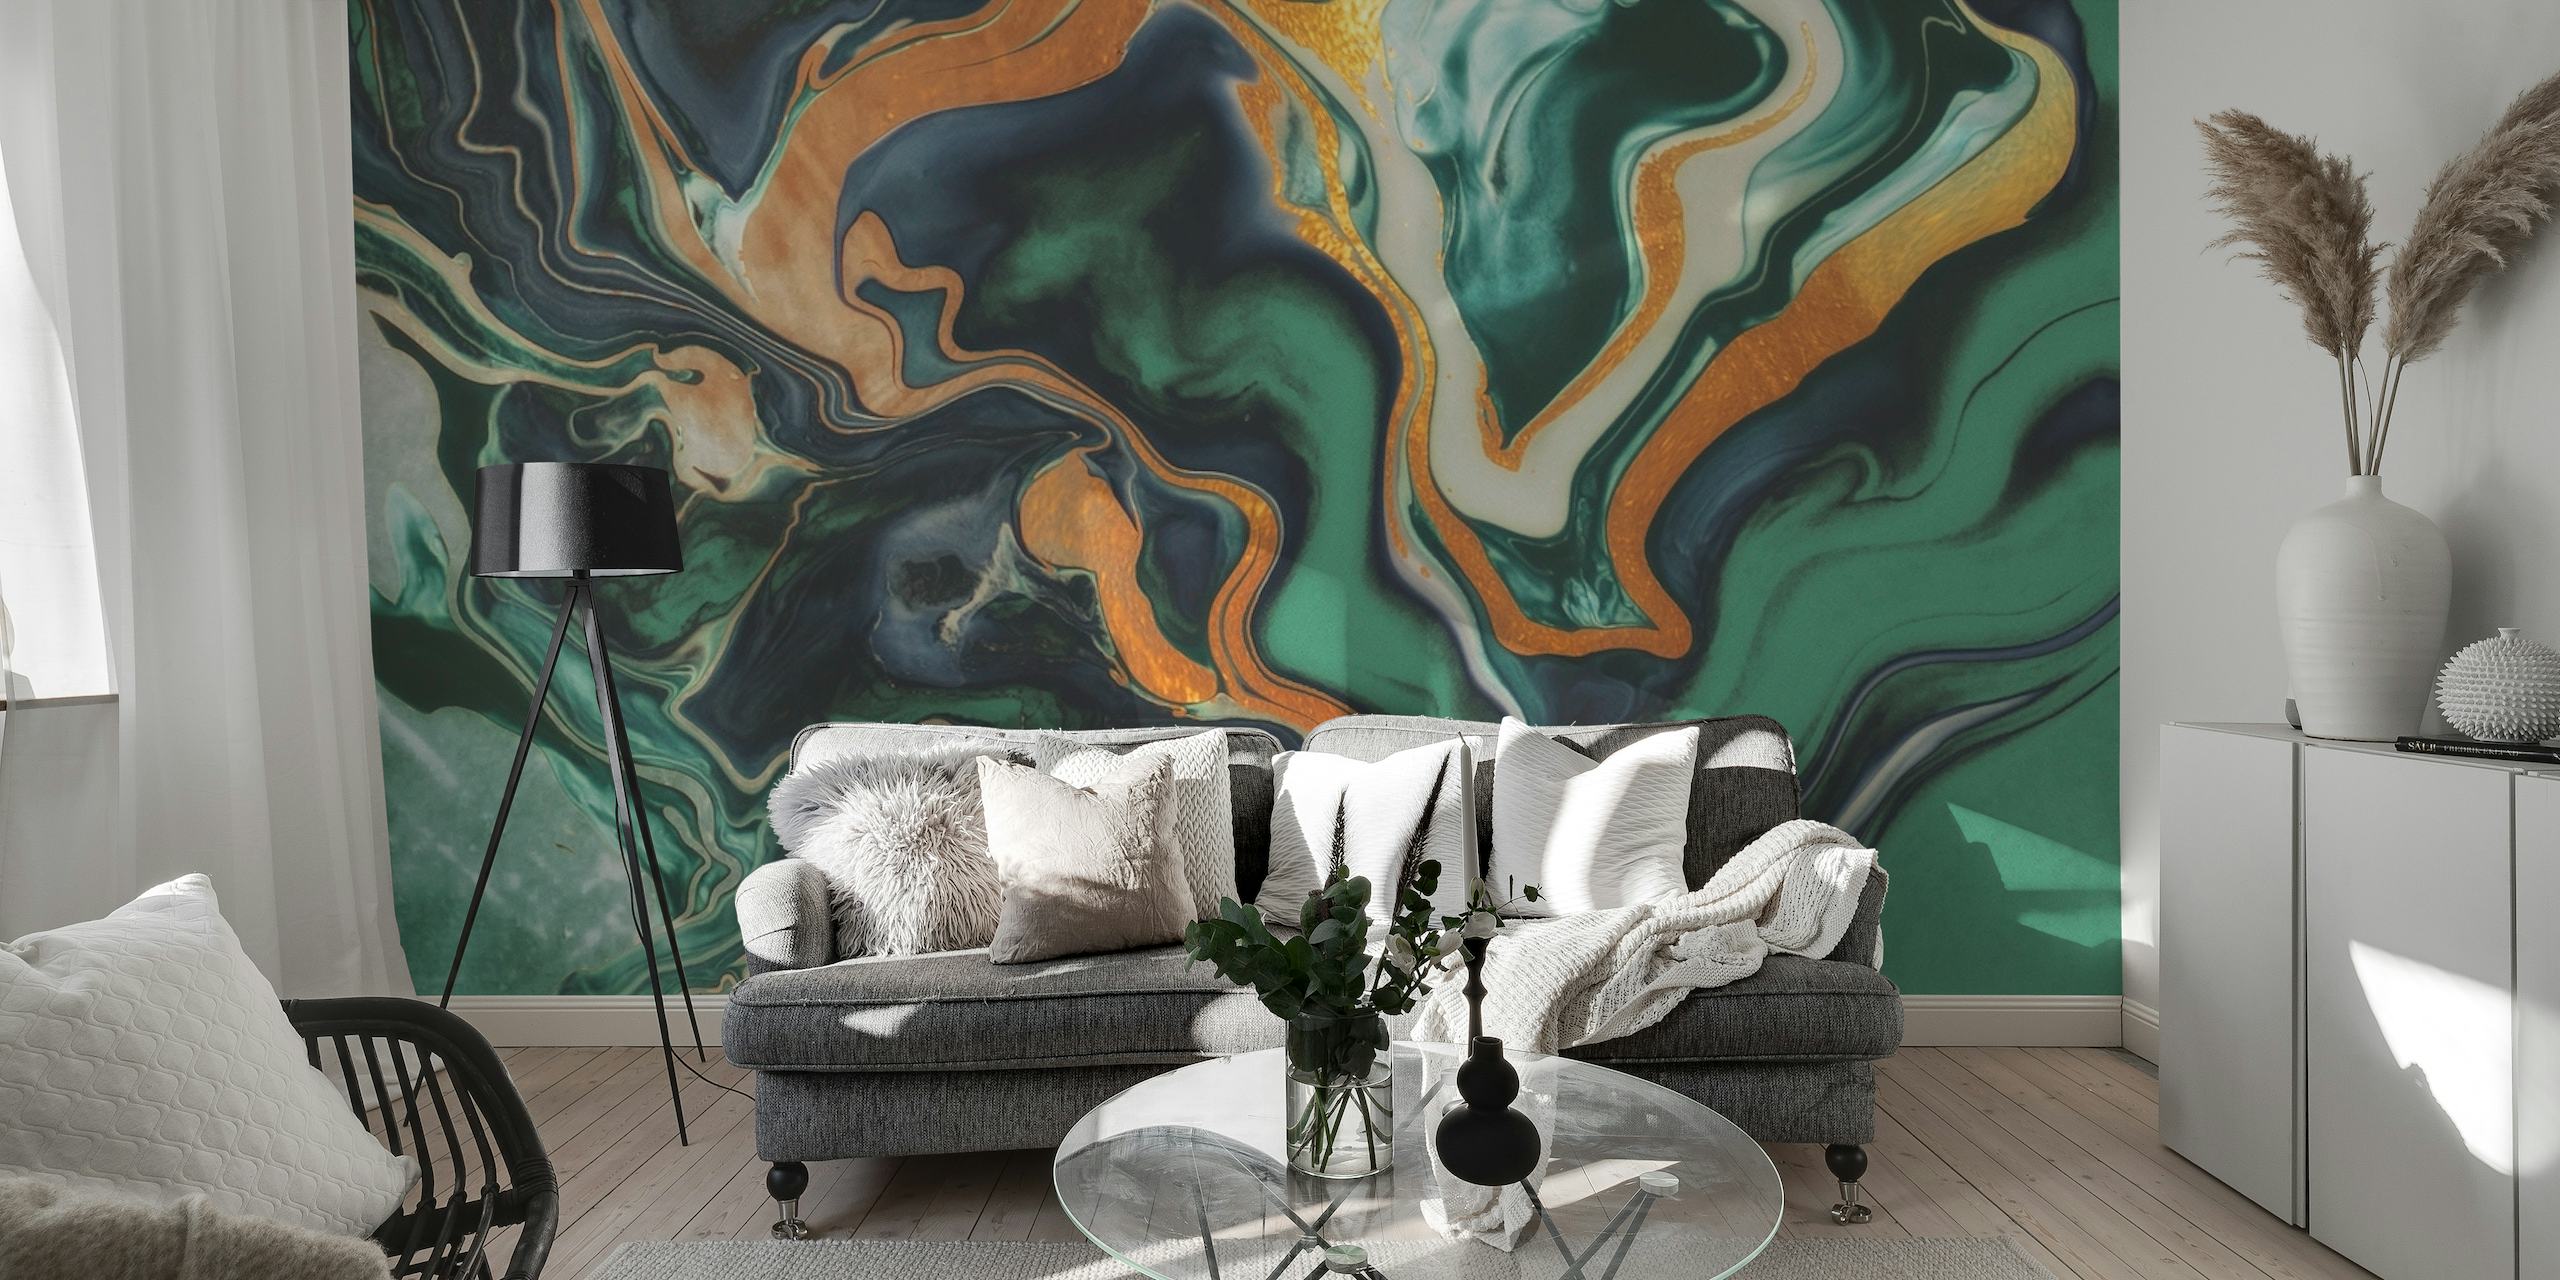 Muurschildering met smaragdgroen en goudmarmeren patroon voor een luxe interieur